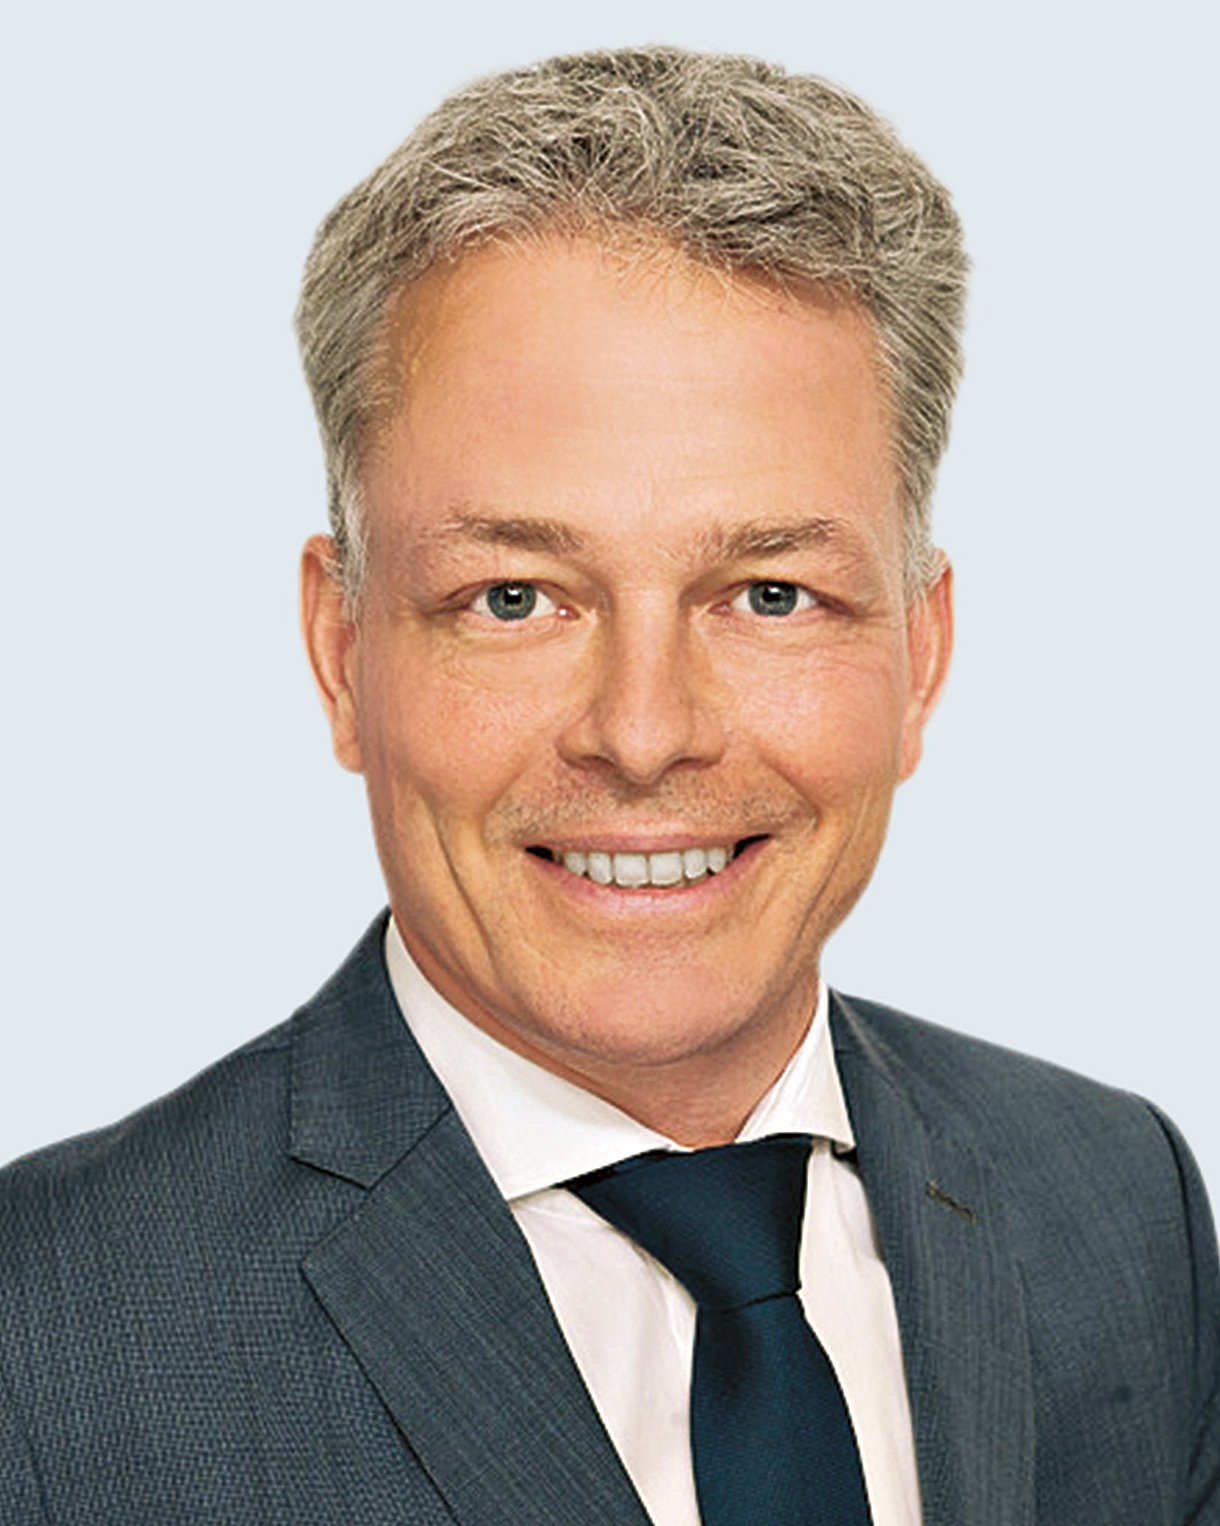 Porträt von Dr. Christian Geinitz, Wirtschaftskorrespondent der Frankfurter Allgemeinen Zeitung